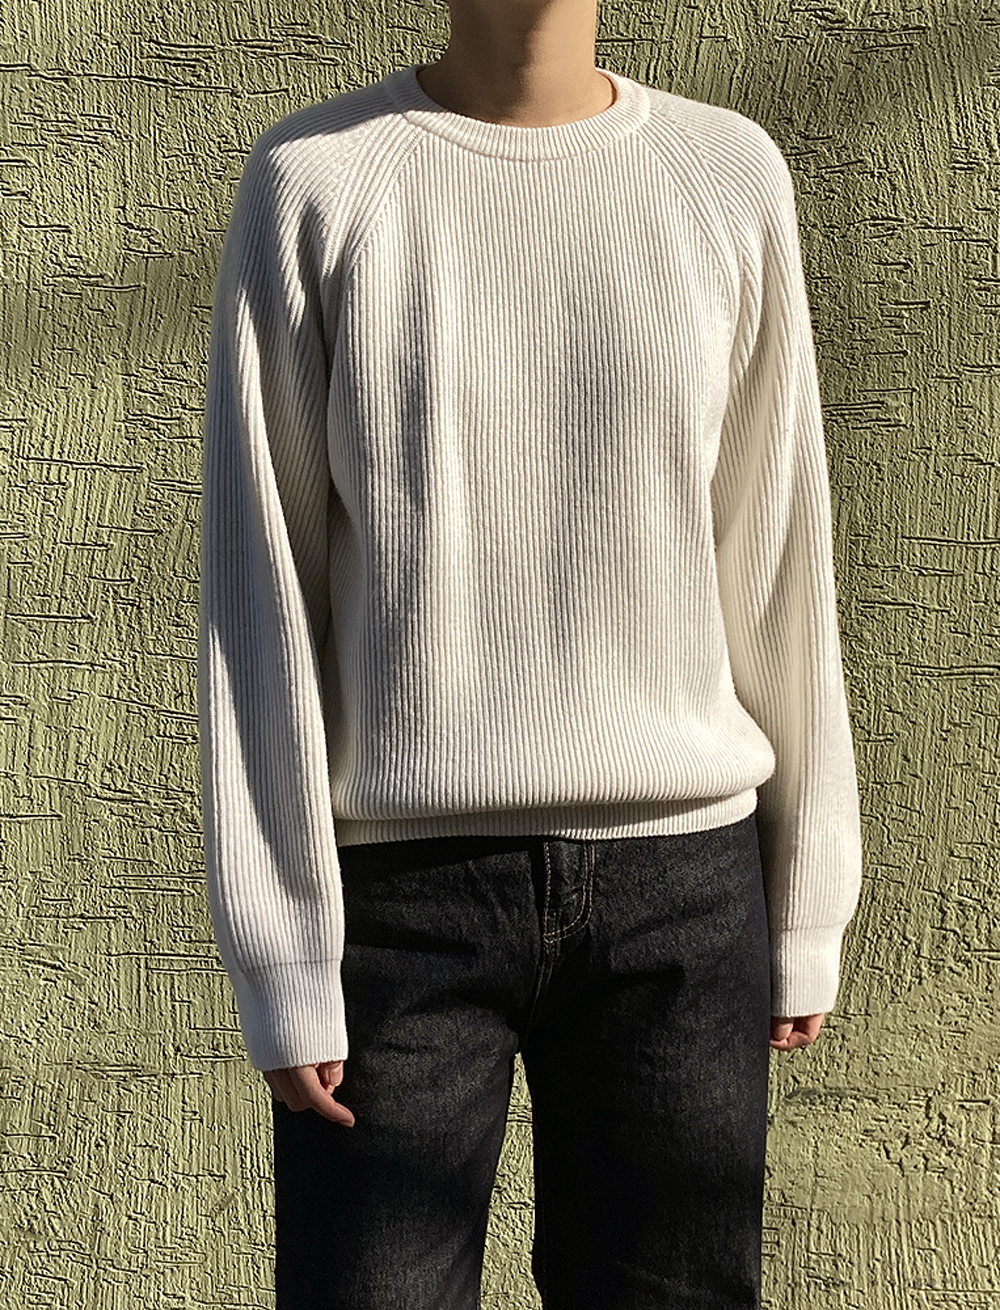 tag wool knit (3c)